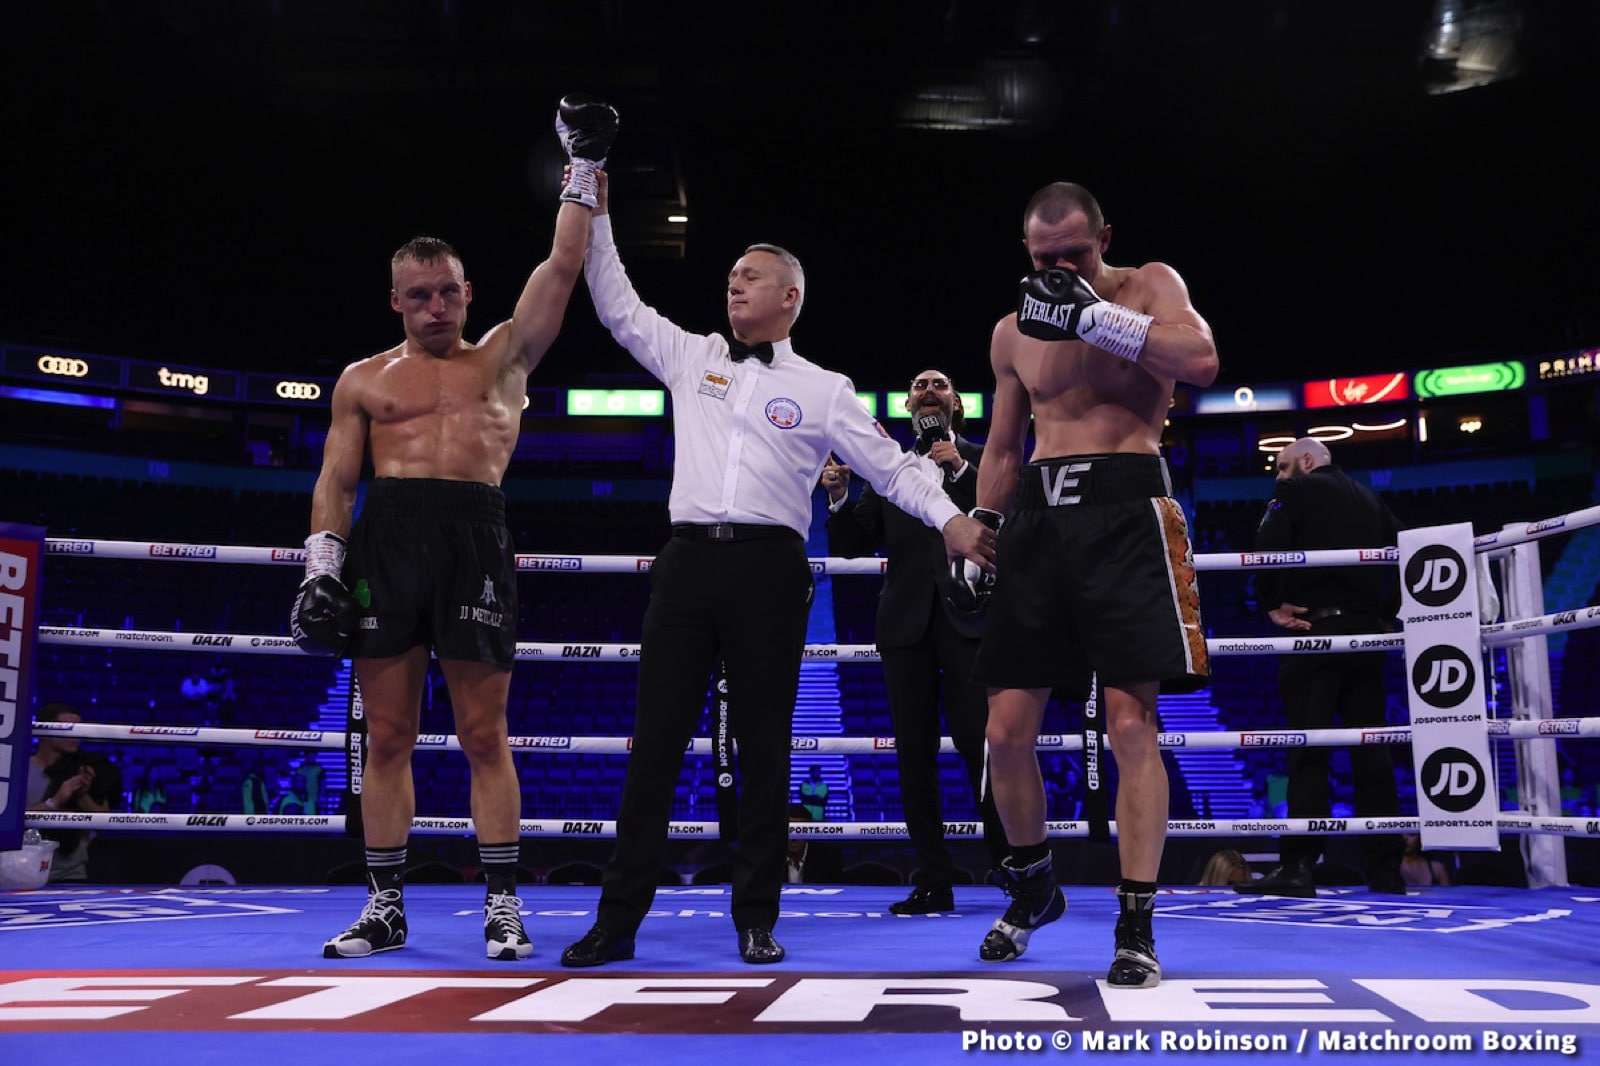 Conor Benn Scores Impressive 2nd Round KO Over Van Heerden - Boxing Results